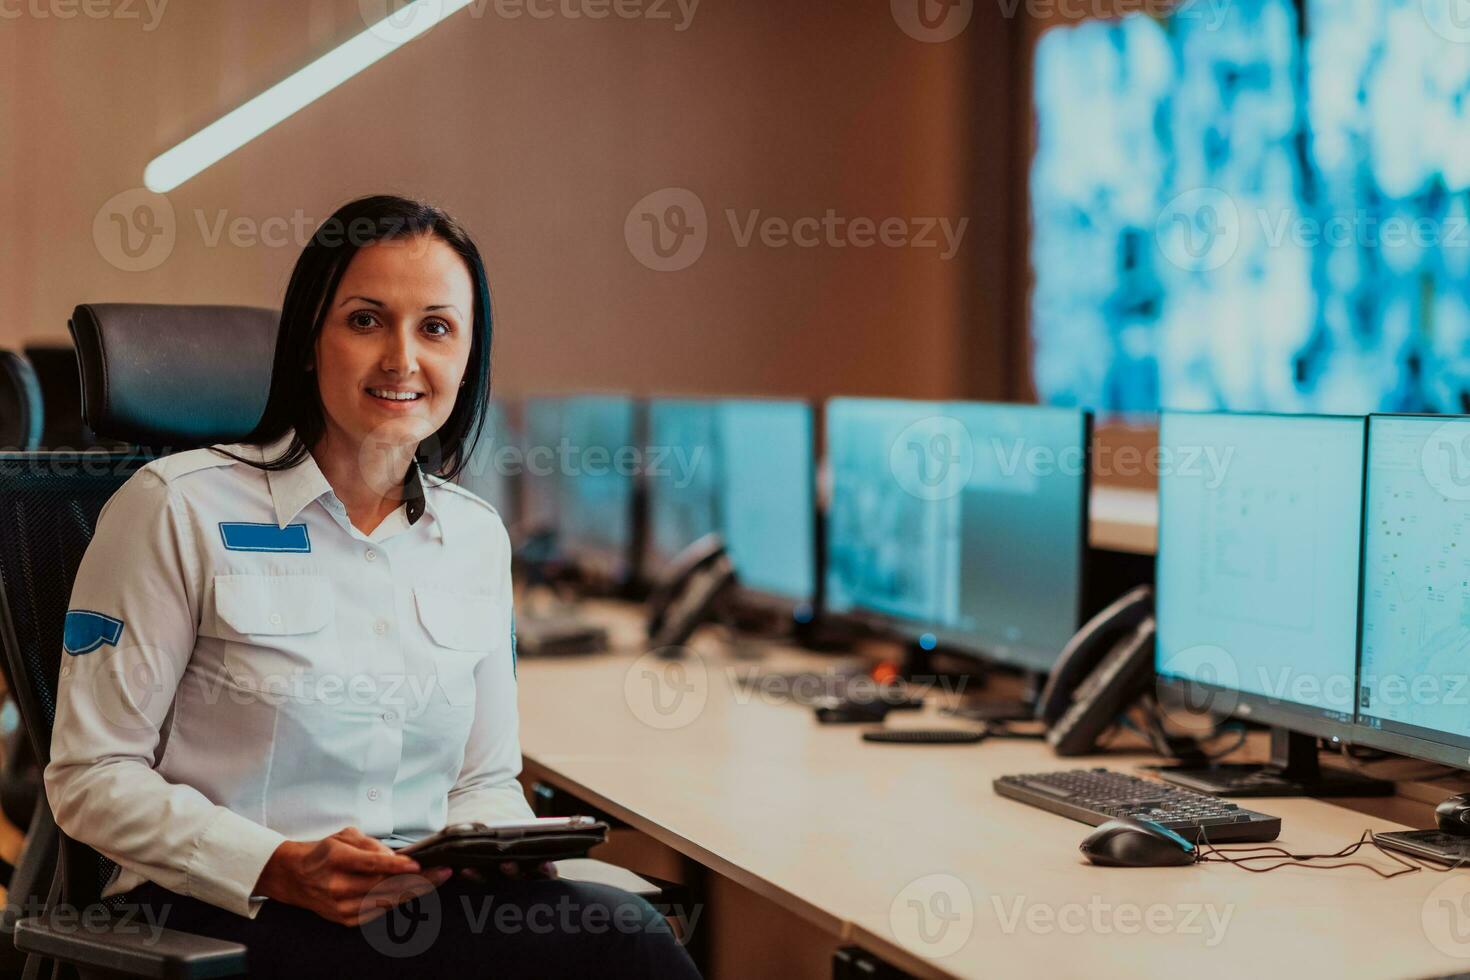 kvinna säkerhet operatör arbetssätt i en data systemet kontrollera rum kontor teknisk operatör arbetssätt på arbetsstation med flera olika skärmar, säkerhet vakt arbetssätt på flera olika monitorer foto